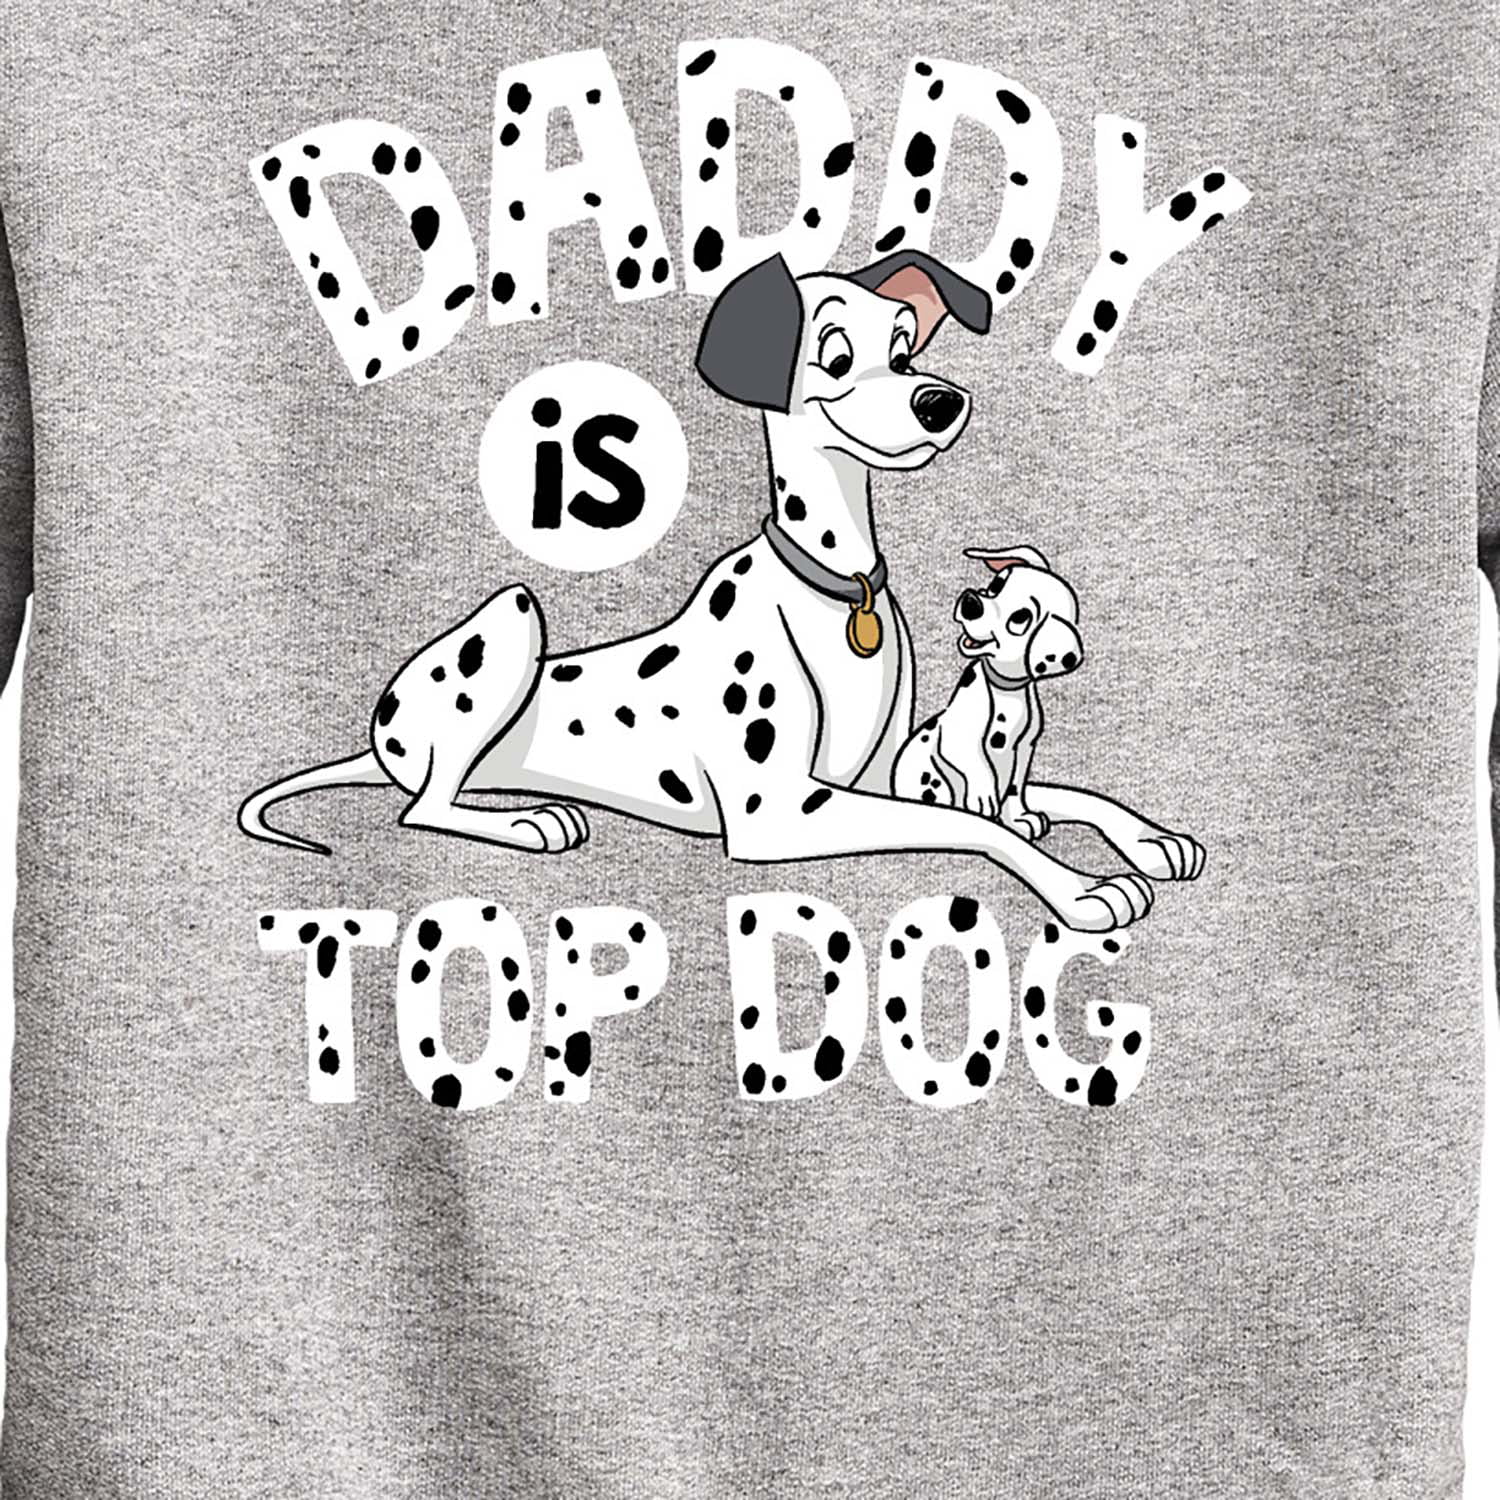 101 Dalmatian Sweatshirt, Disneyland Dog Shirt, Disney 101 D - Inspire  Uplift